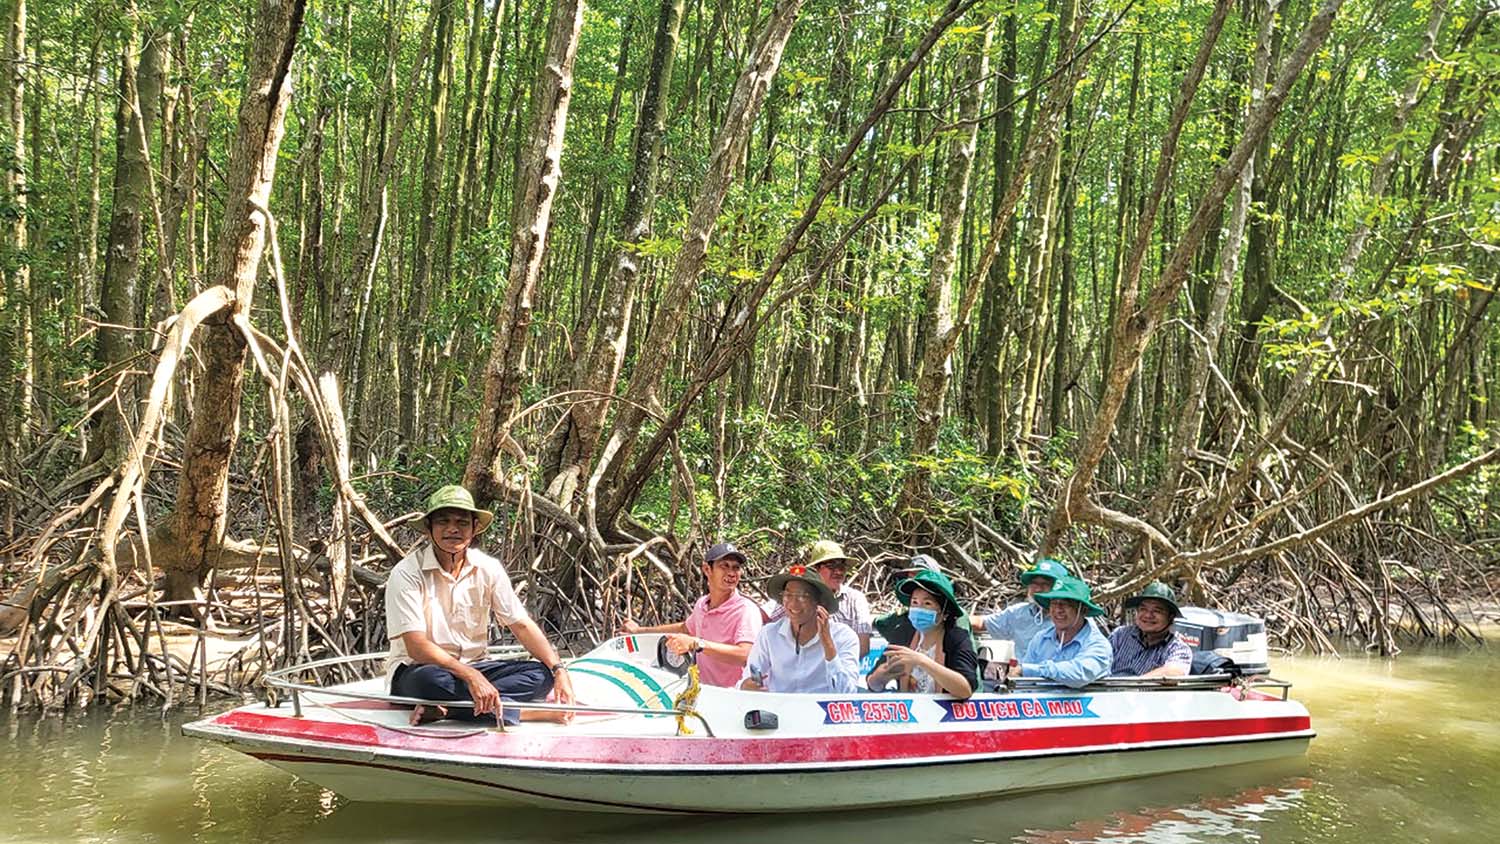 Du lịch Xuyên rừng Cà Mau bằng ca nô được du khách ưa thích